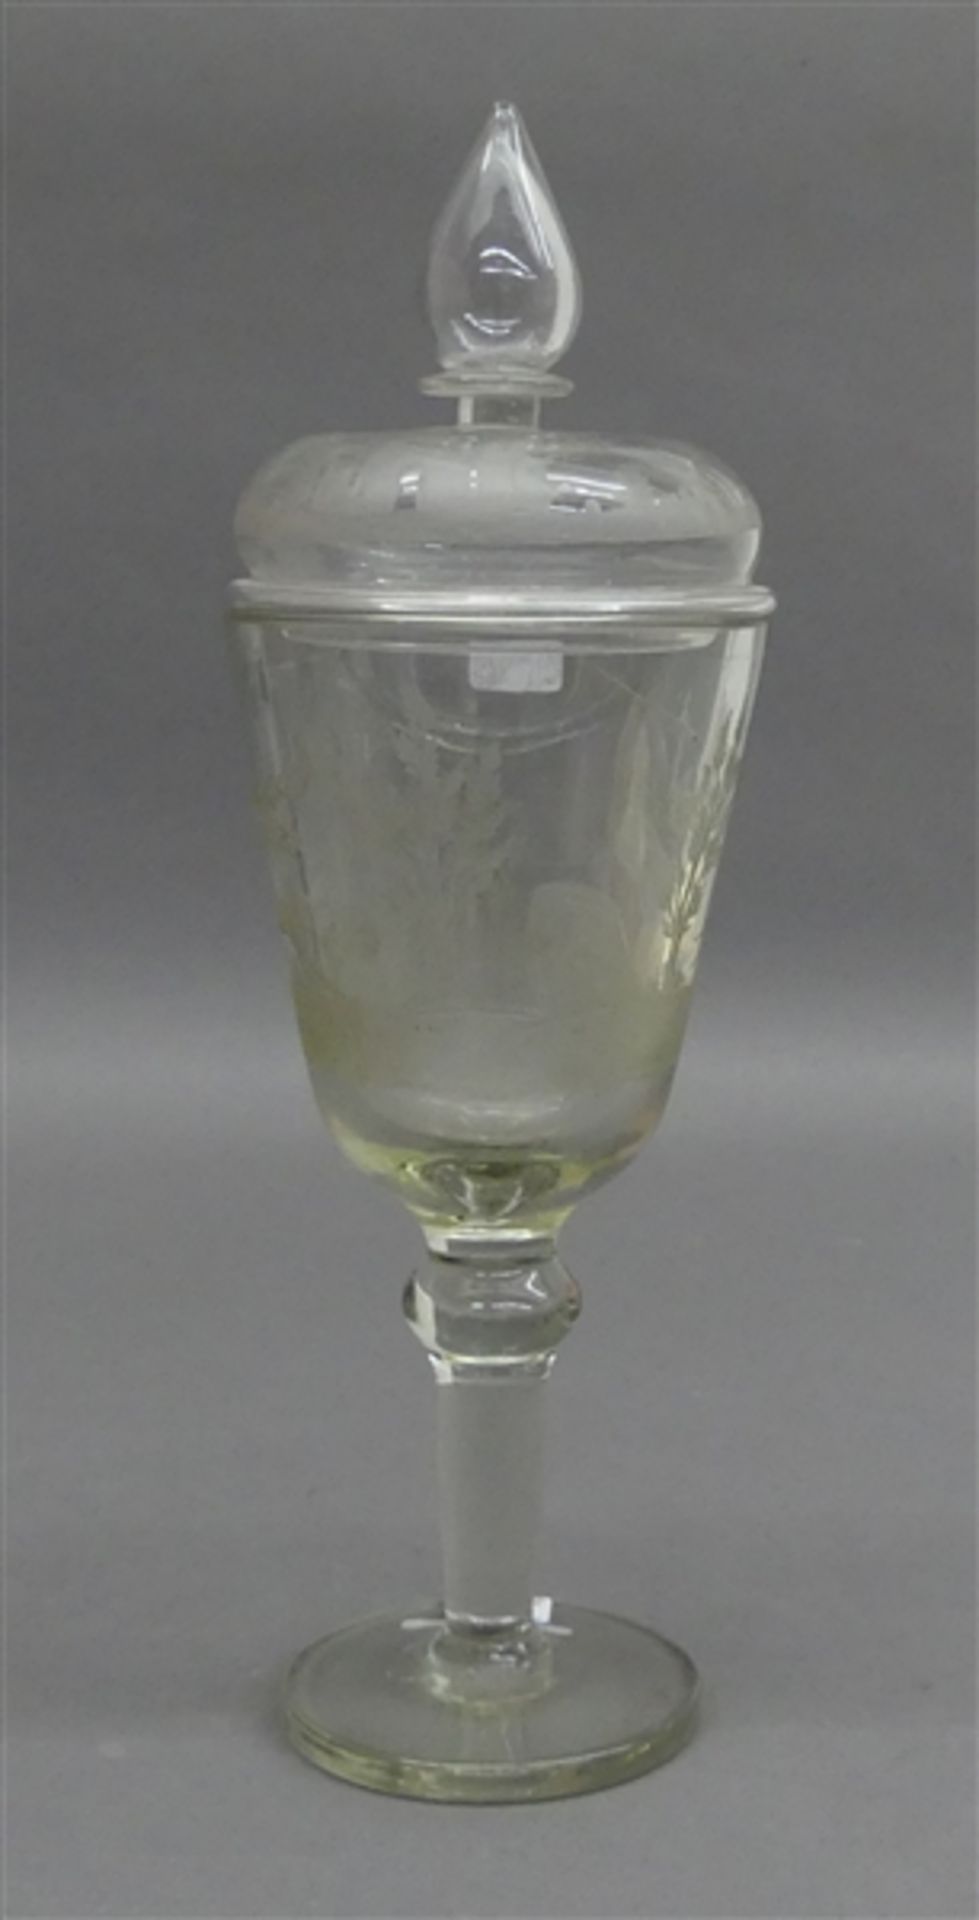 Deckelpokal farbloses Glas, reich beschliffen, Jagddekor, beschliffener Glasdeckel, um 1880, h 34